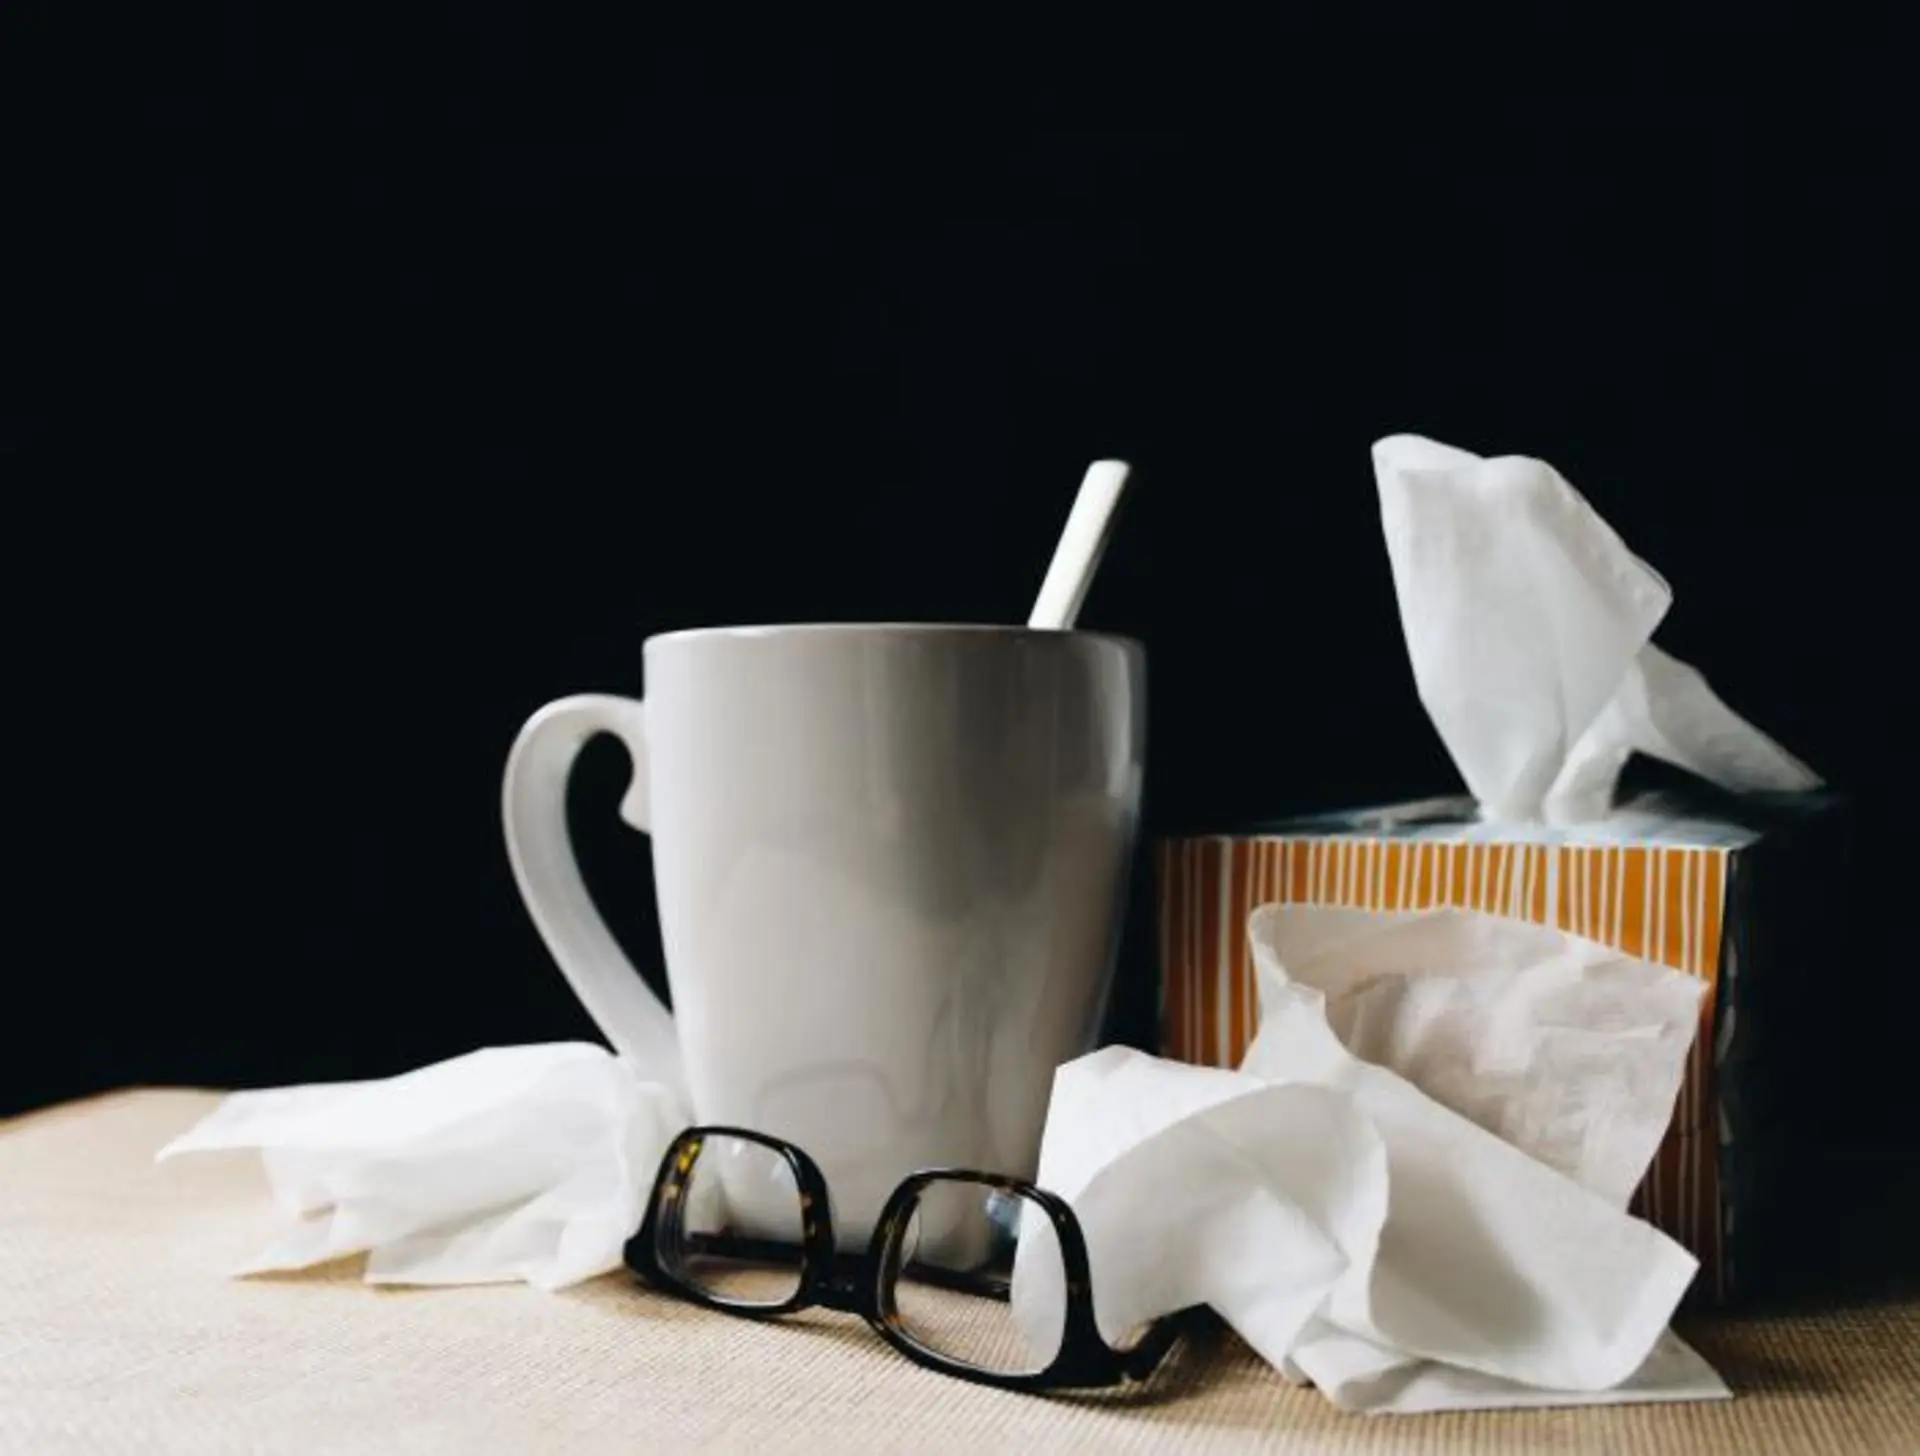 Cinq mythes par rapport au rhume 